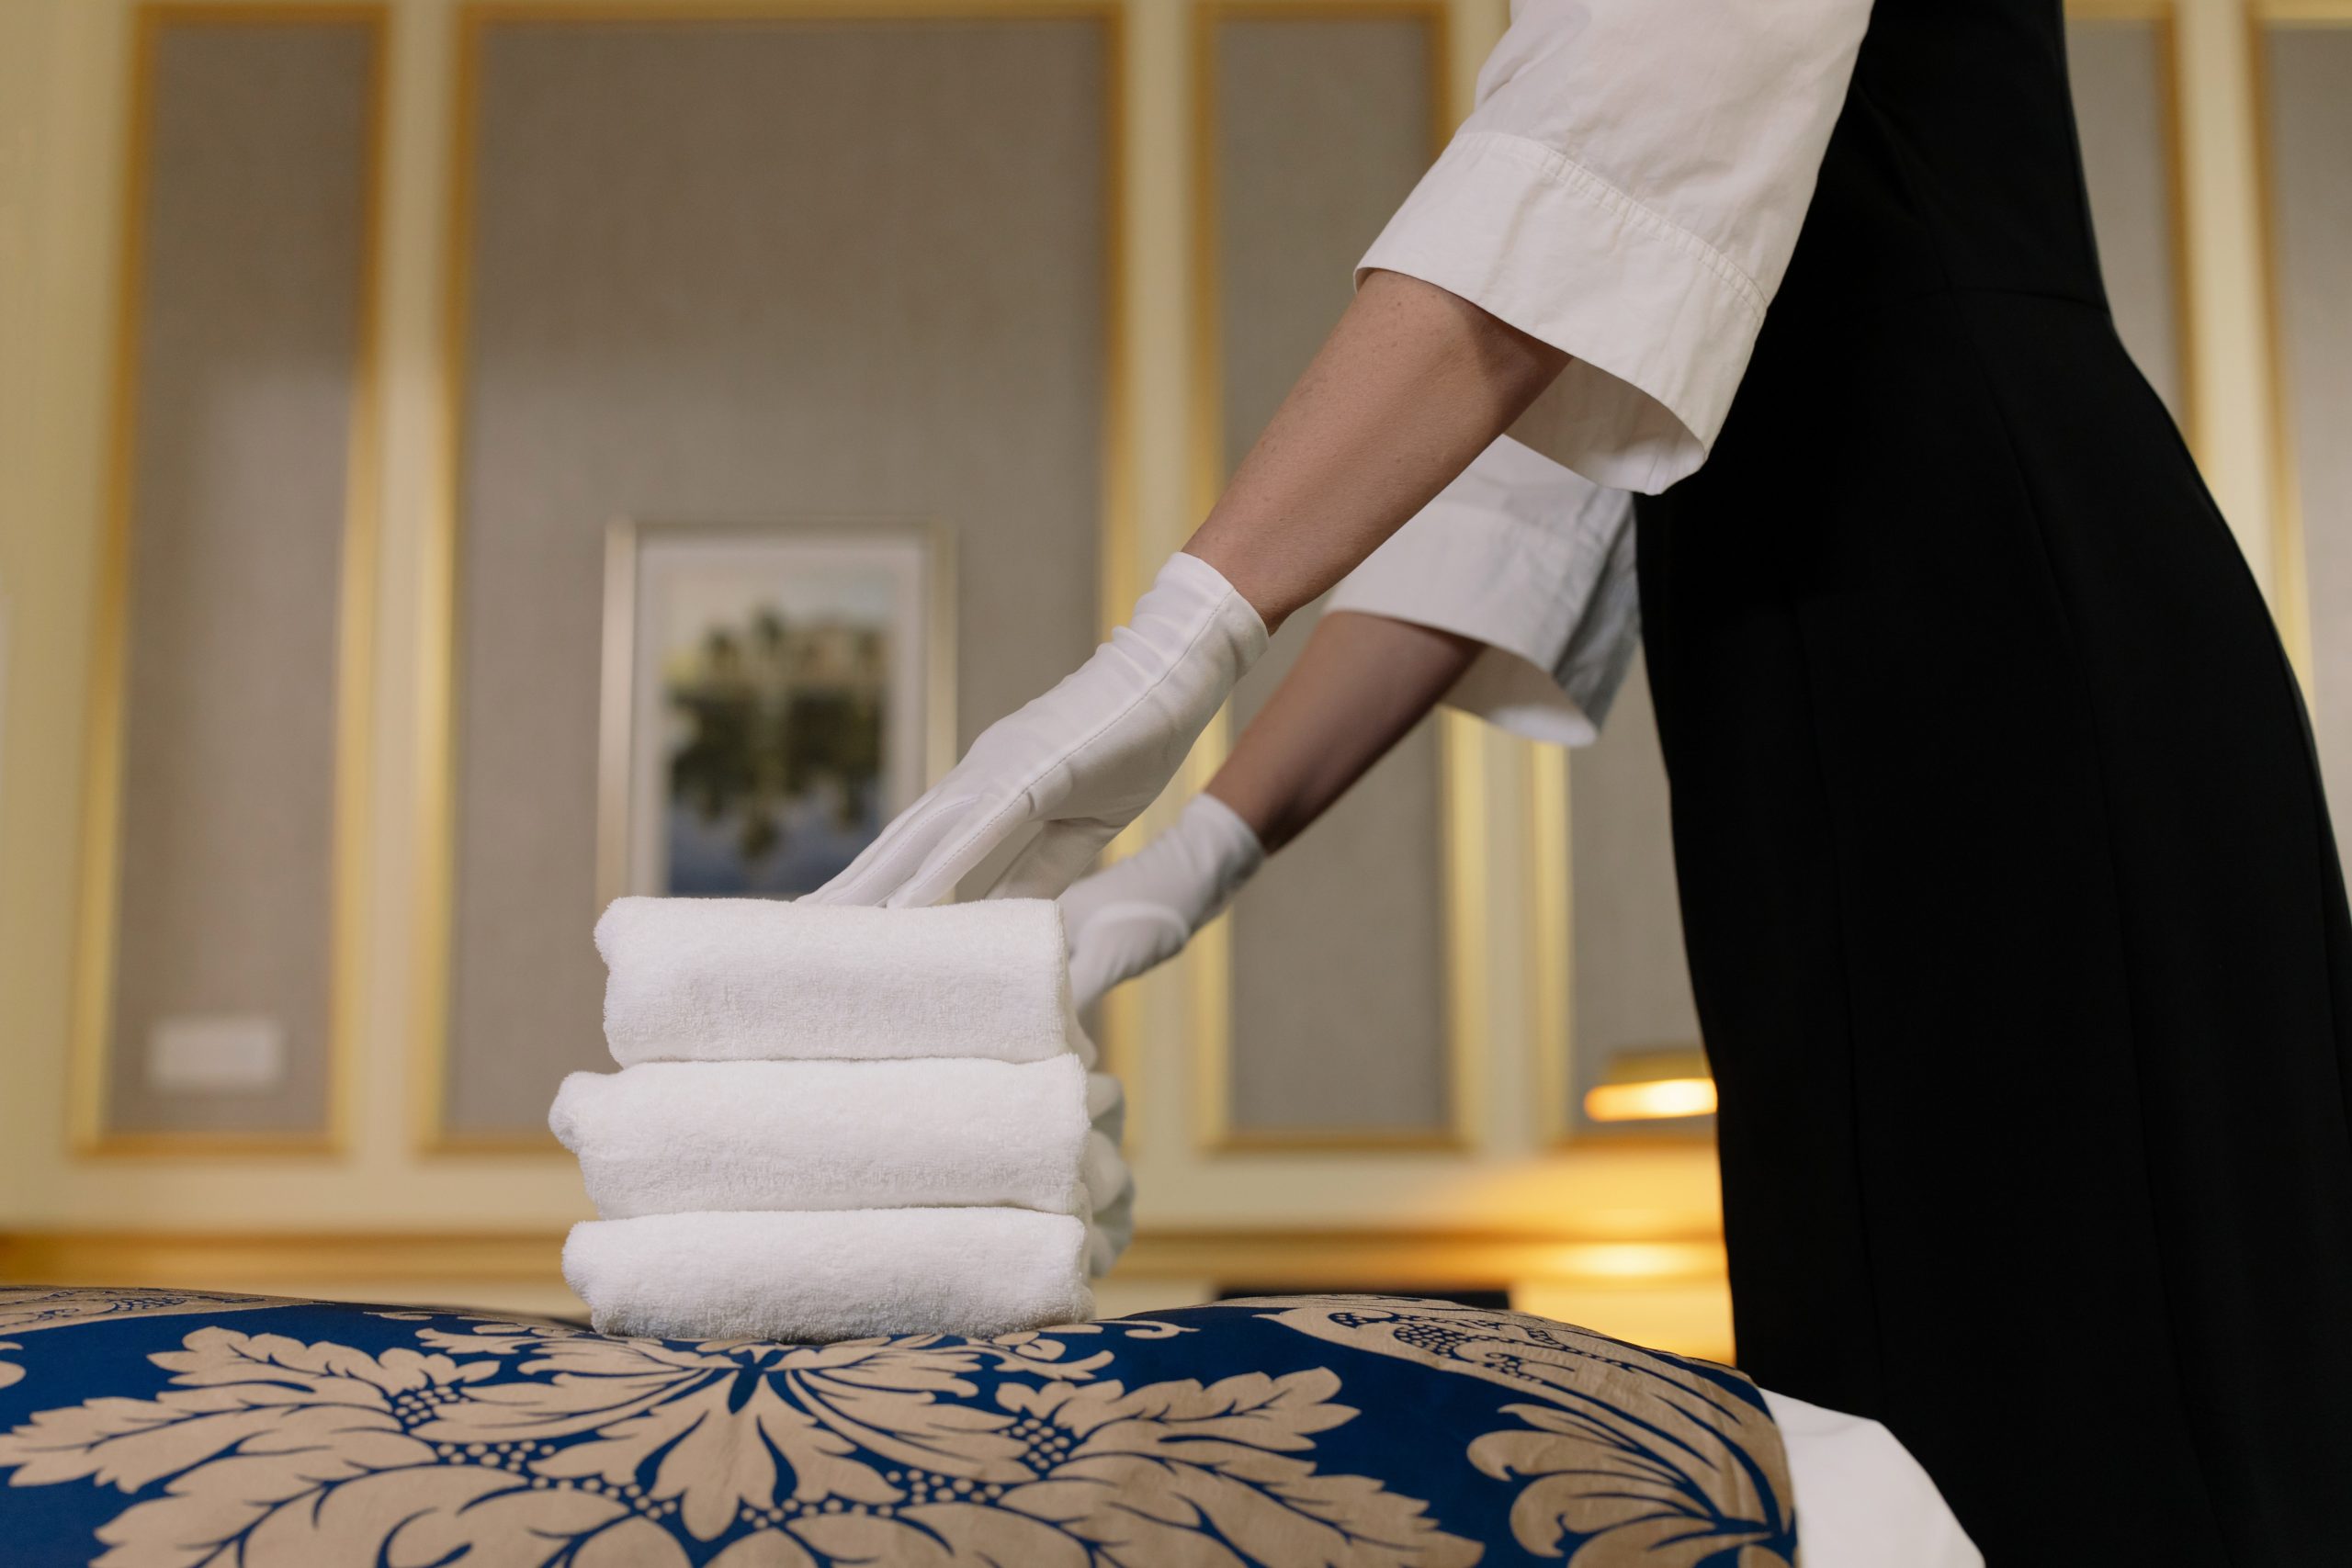 Ręczniki w pokojach hotelowych — must have czy opcjonalny dodatek?